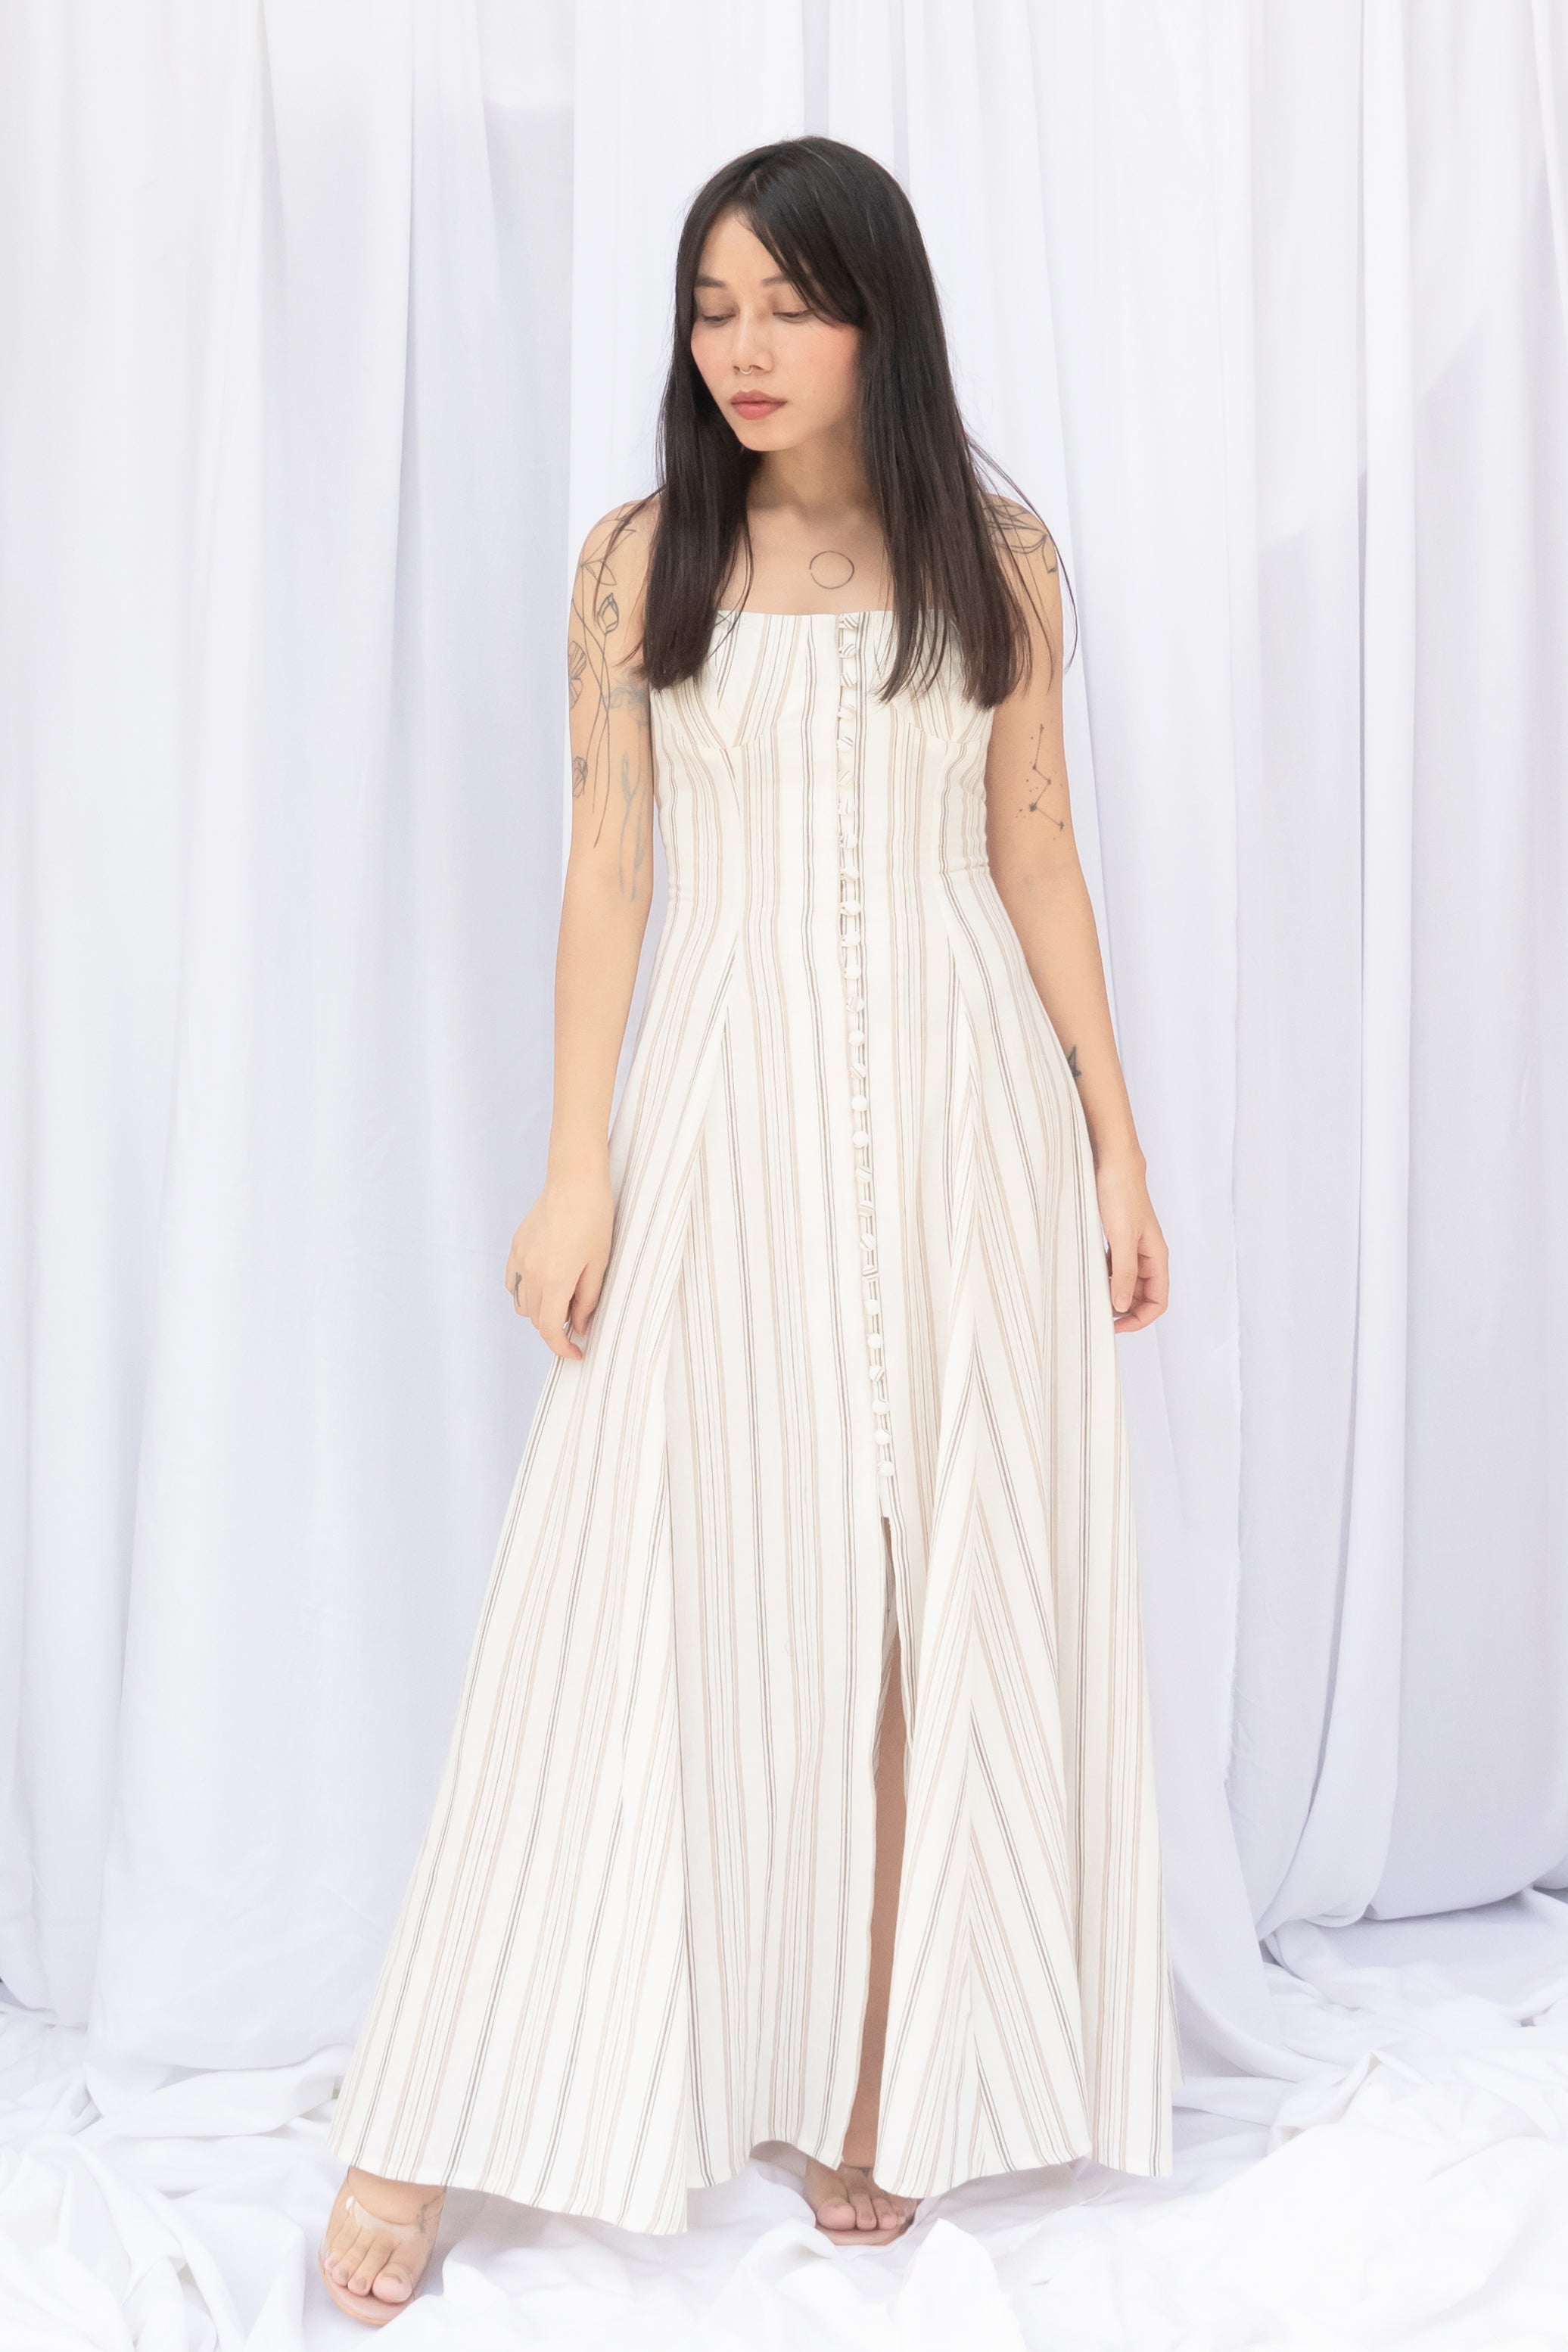 Clarice Dress (Maxi length)